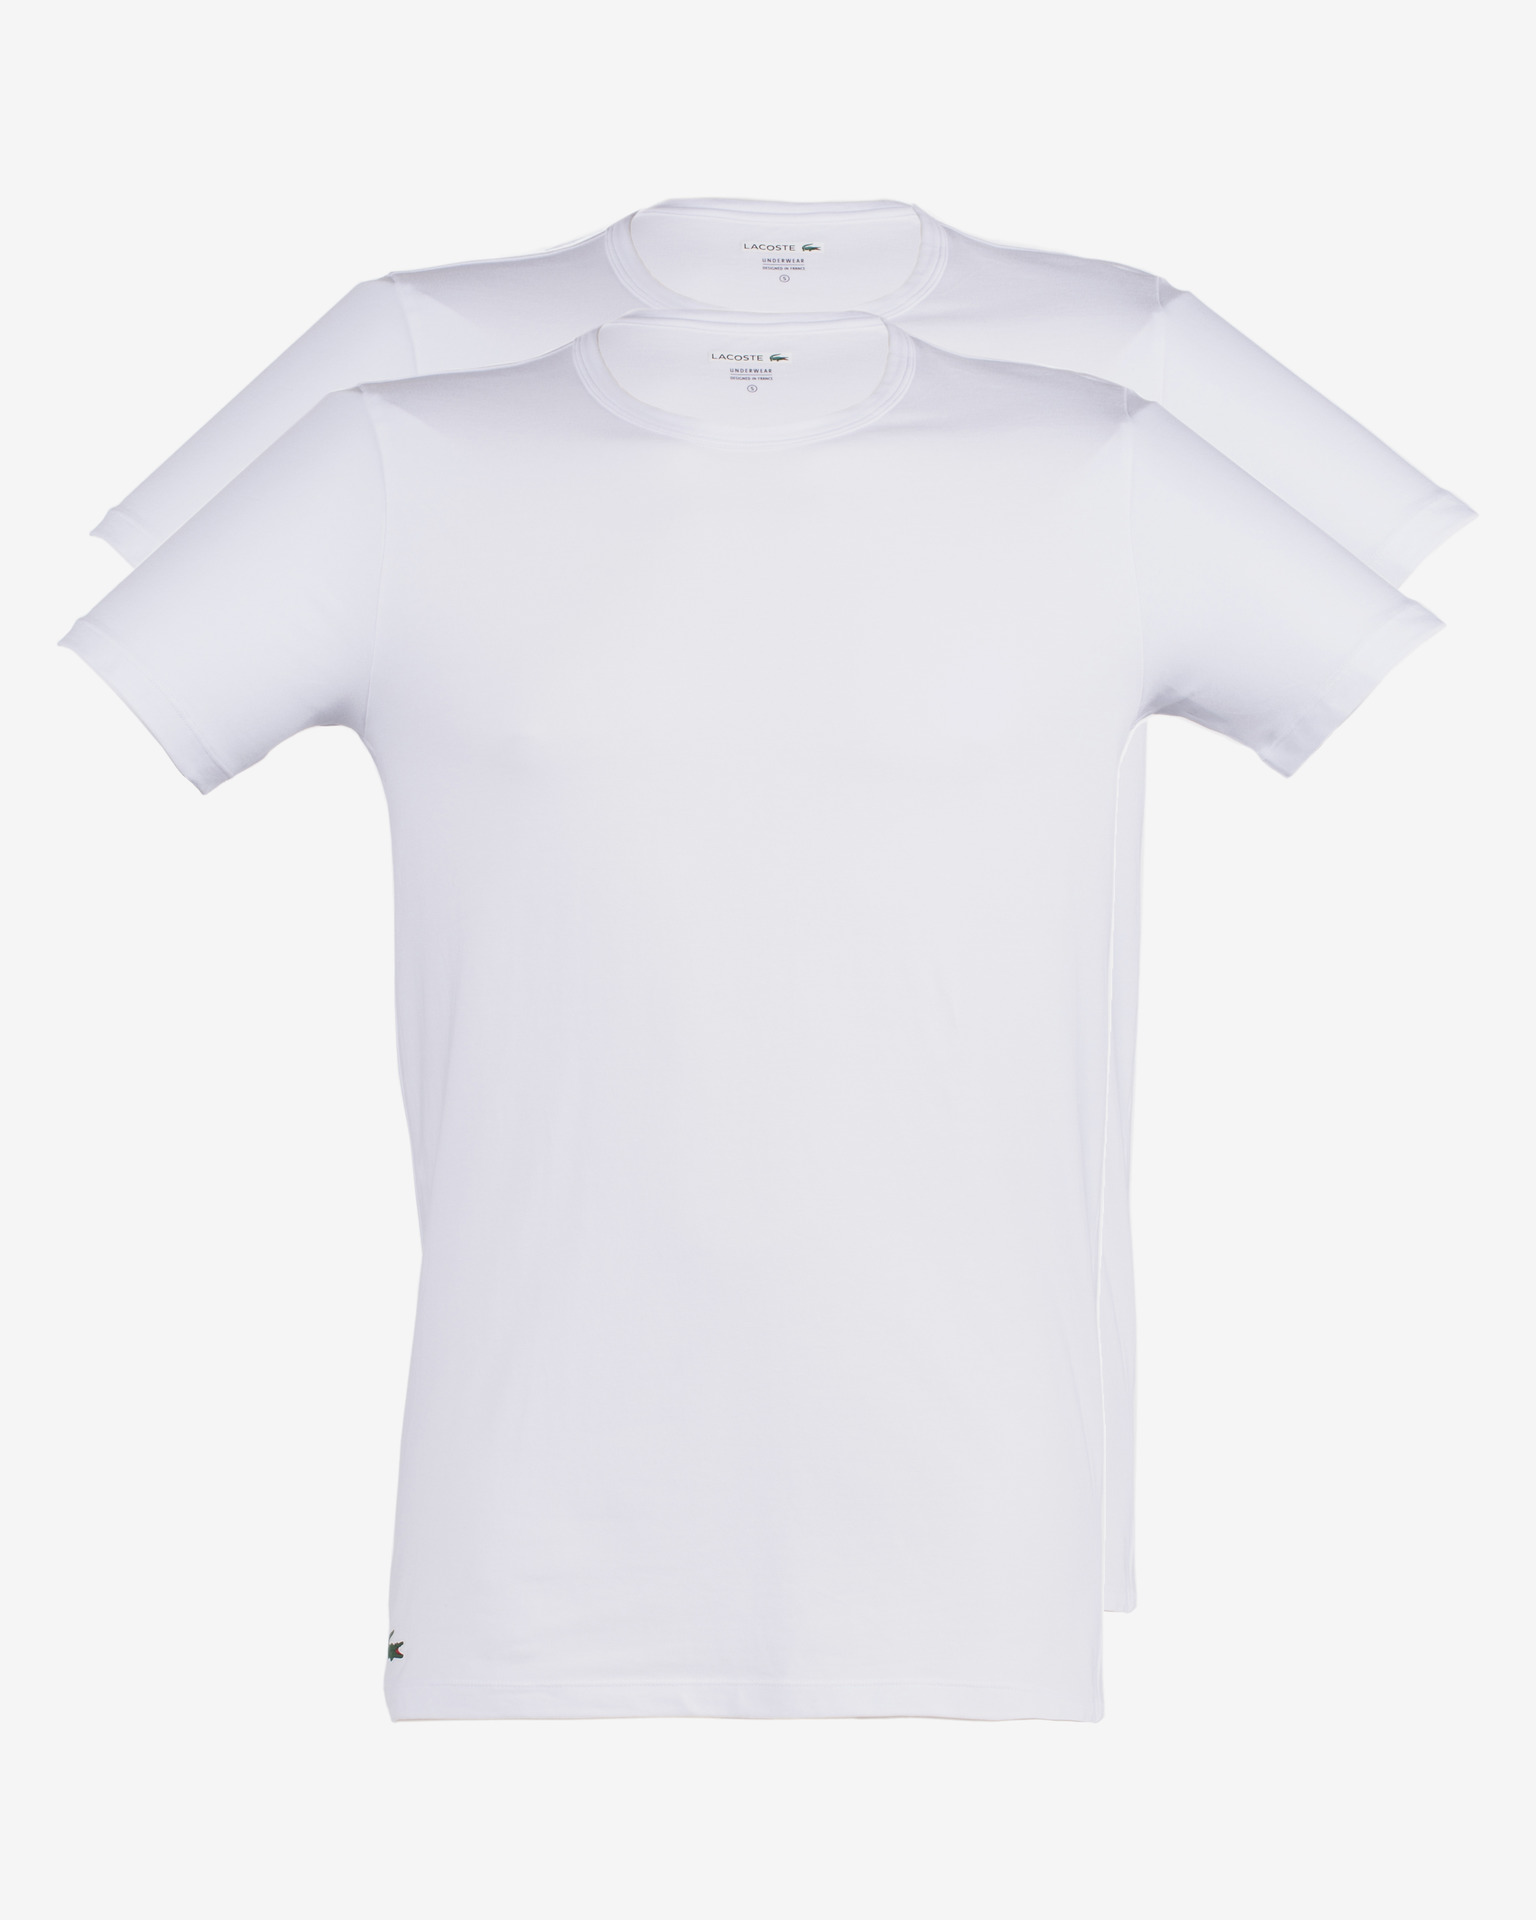 lacoste white undershirt